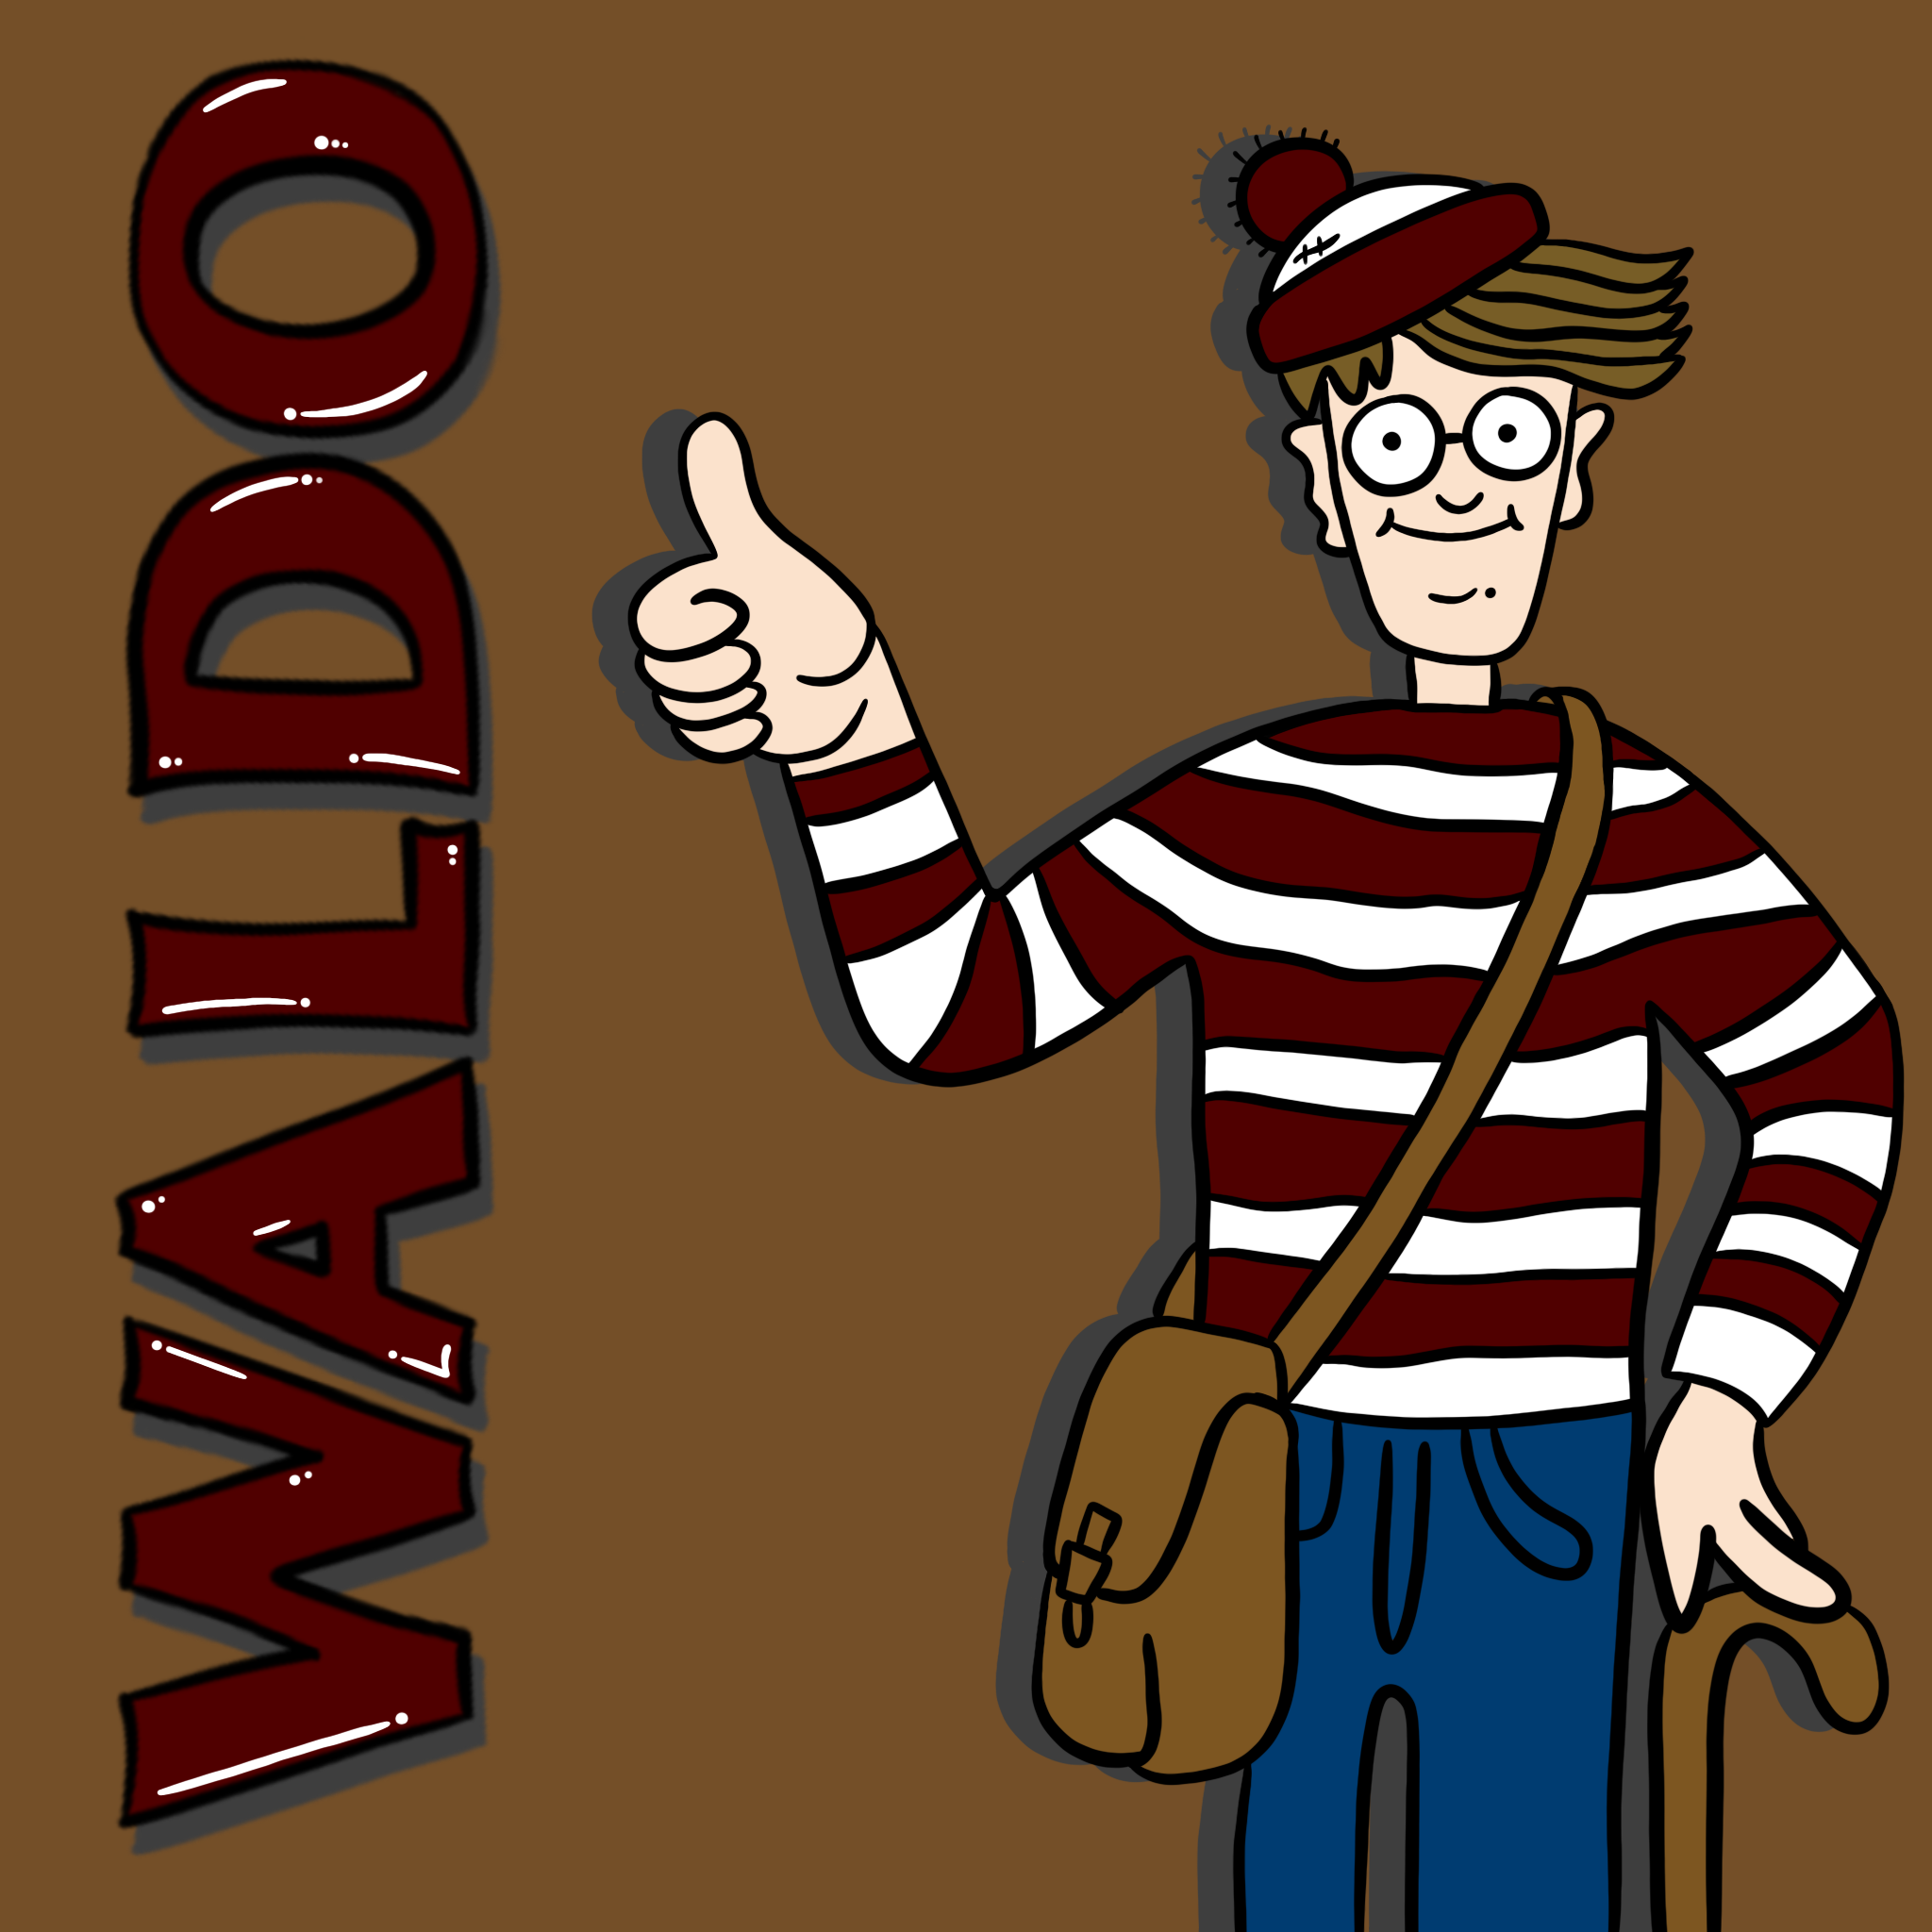 Graphic of Waldo holding up a gig 'em.